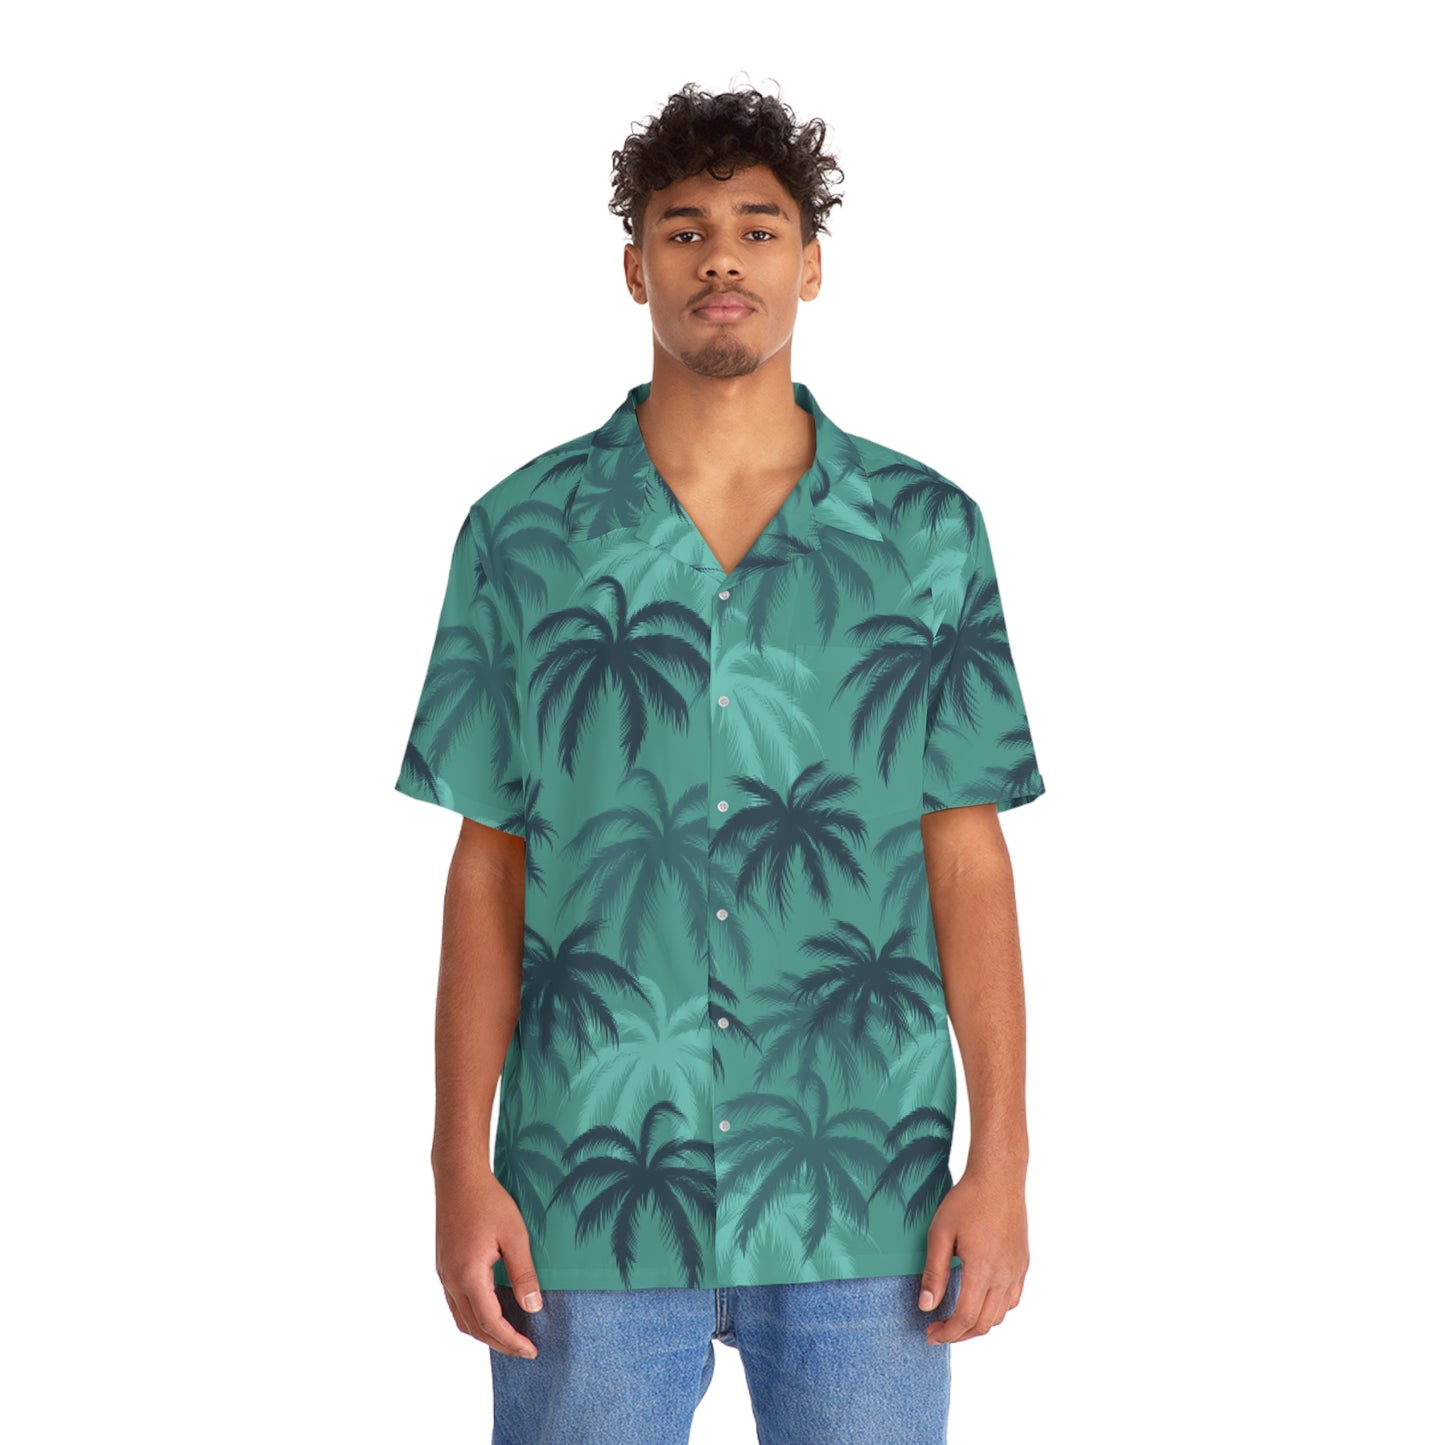 Tommy V LO RES "Hawaiian" shirt